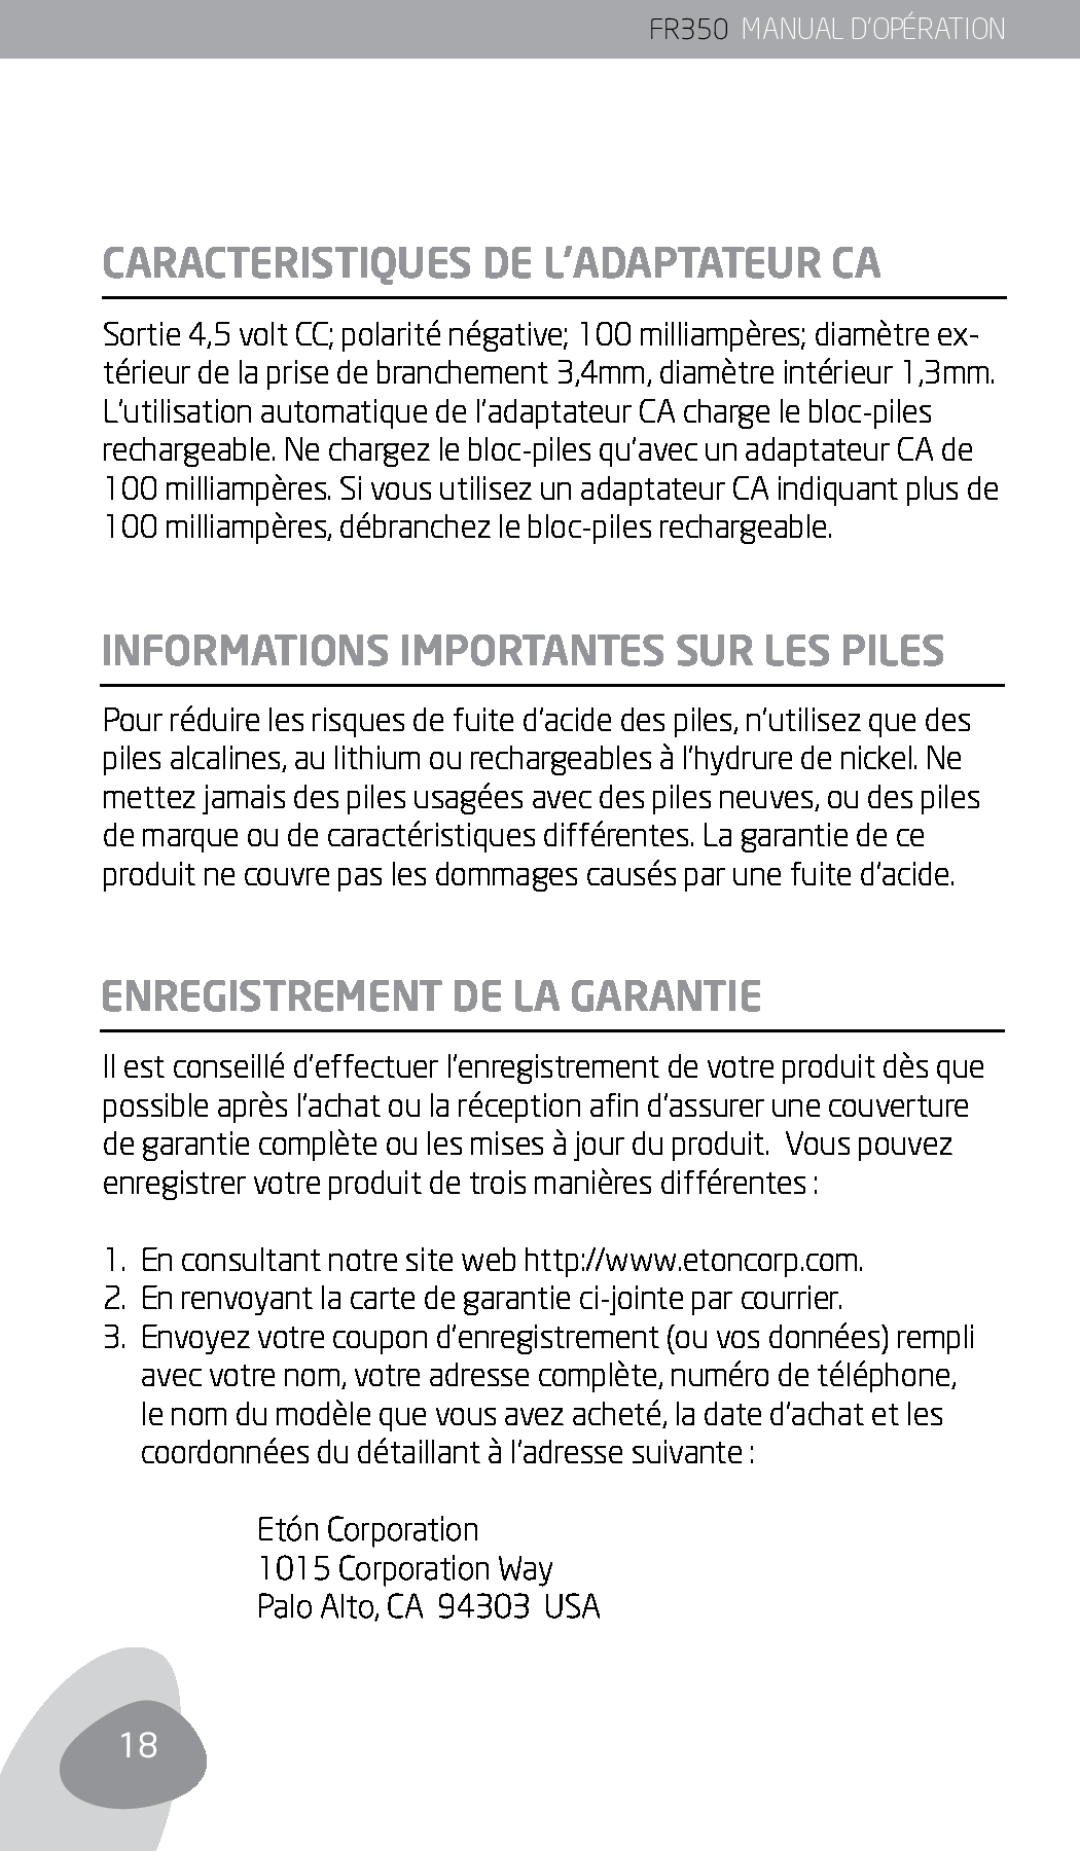 Eton FR350 Caracteristiques De L’Adaptateur Ca, Informations Importantes Sur Les Piles, Enregistrement De La Garantie 